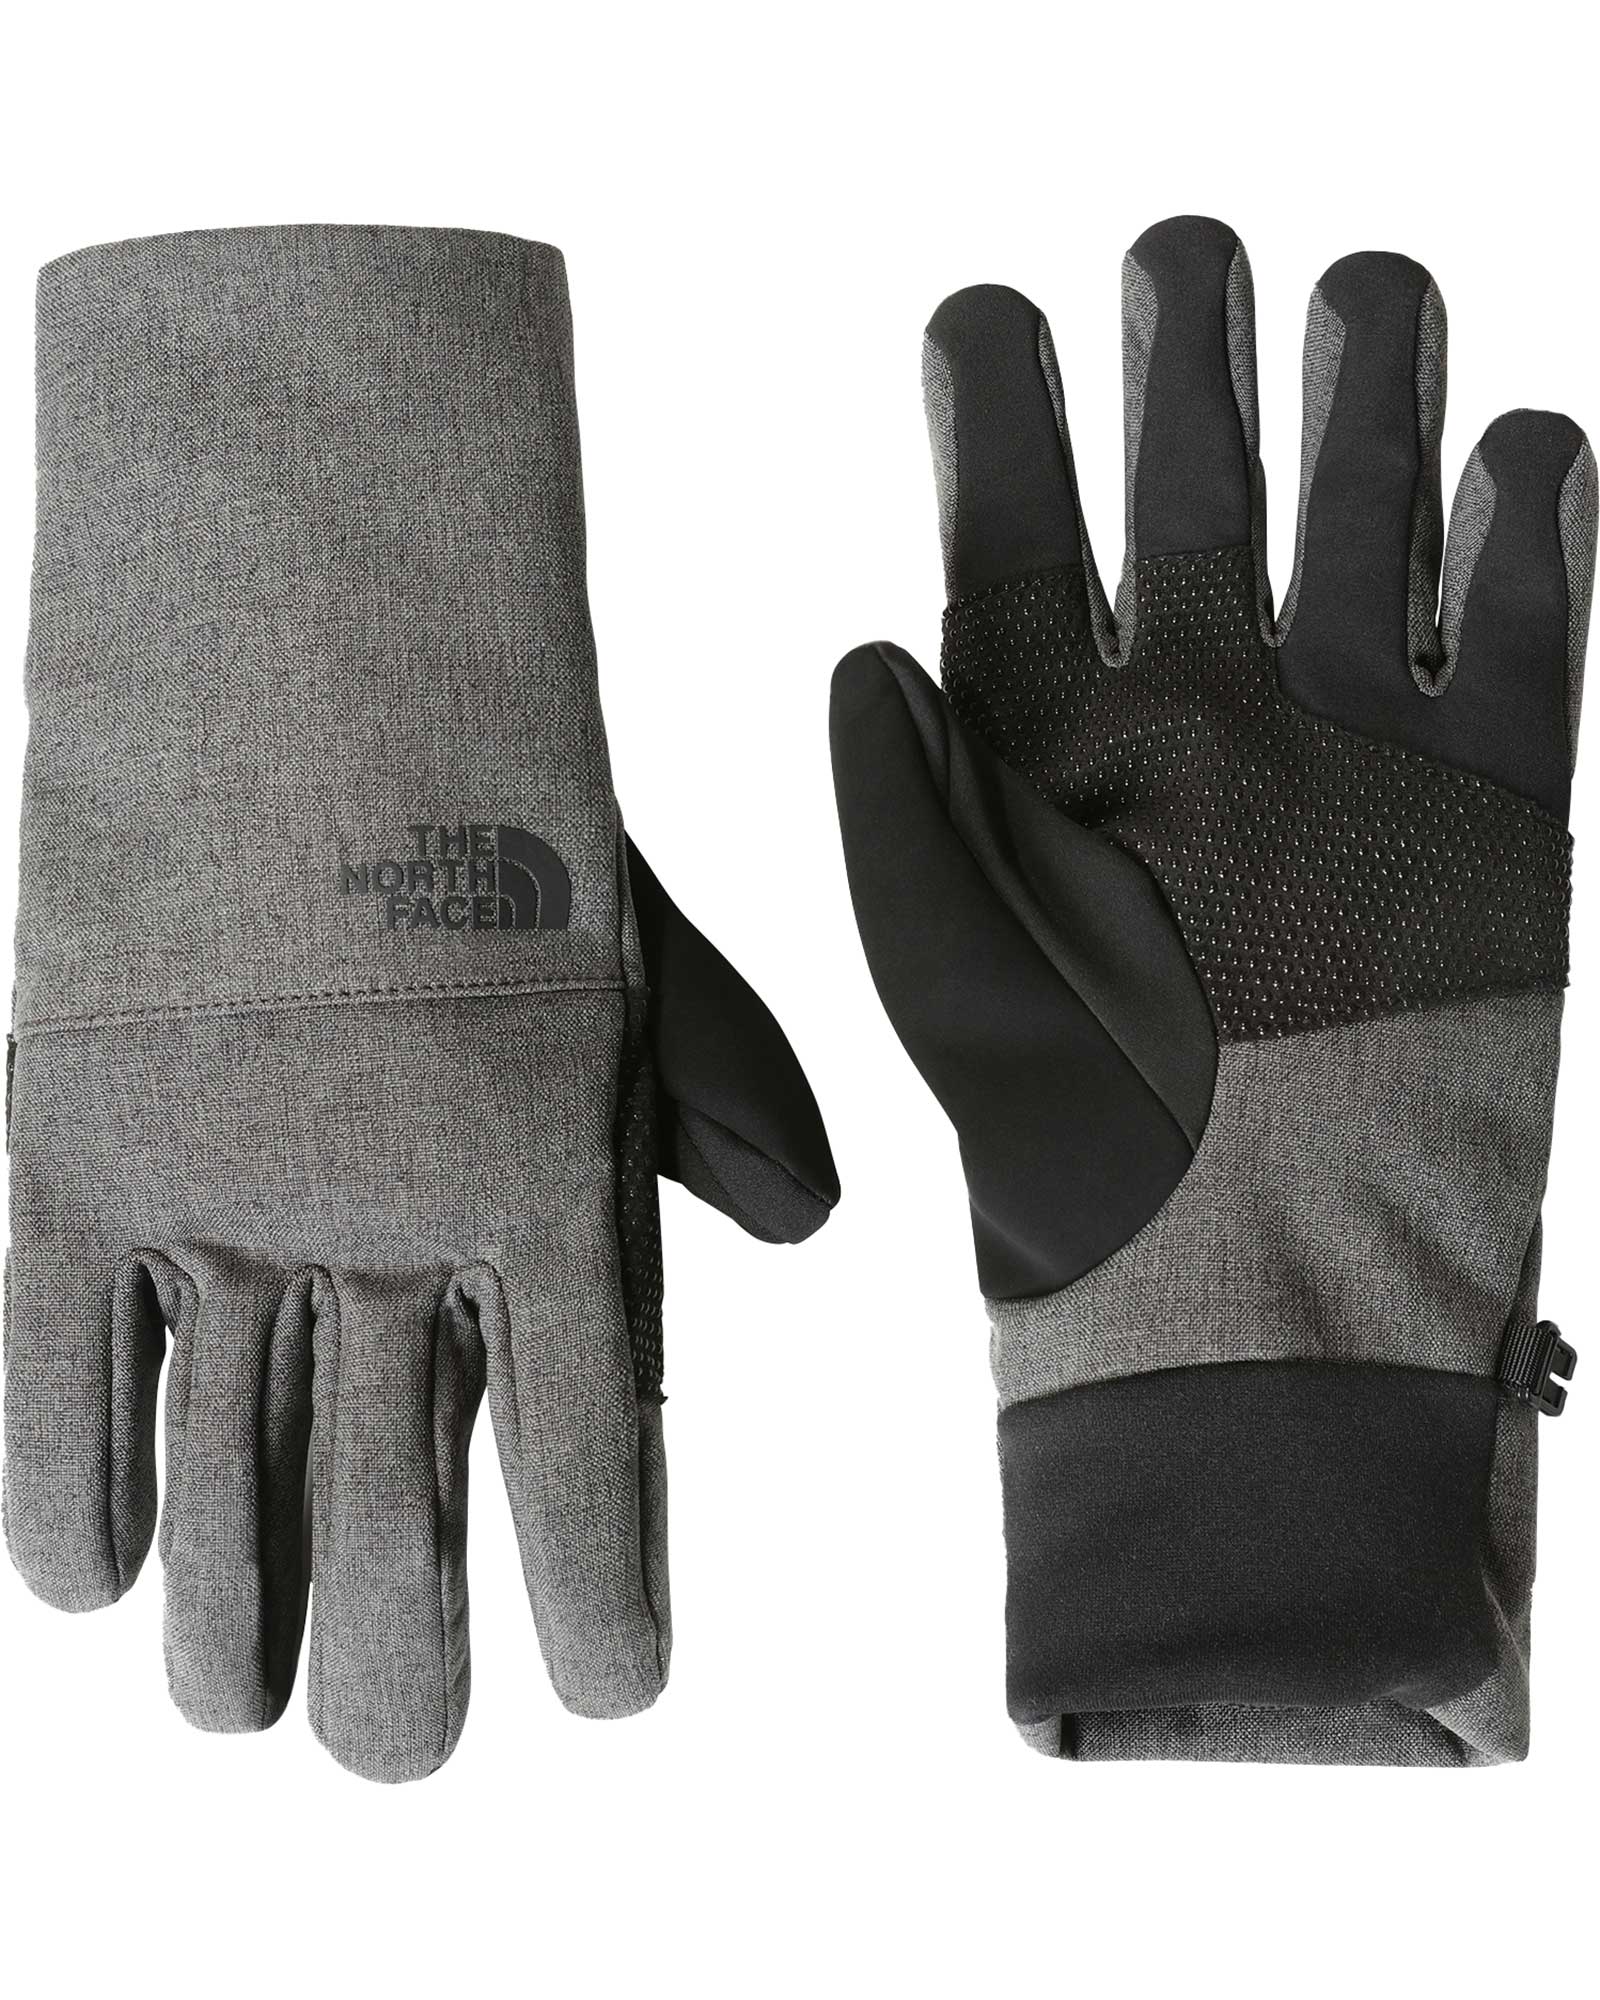 The North Face Apex Etip Men’s Gloves - TNF Dark Grey Heather L